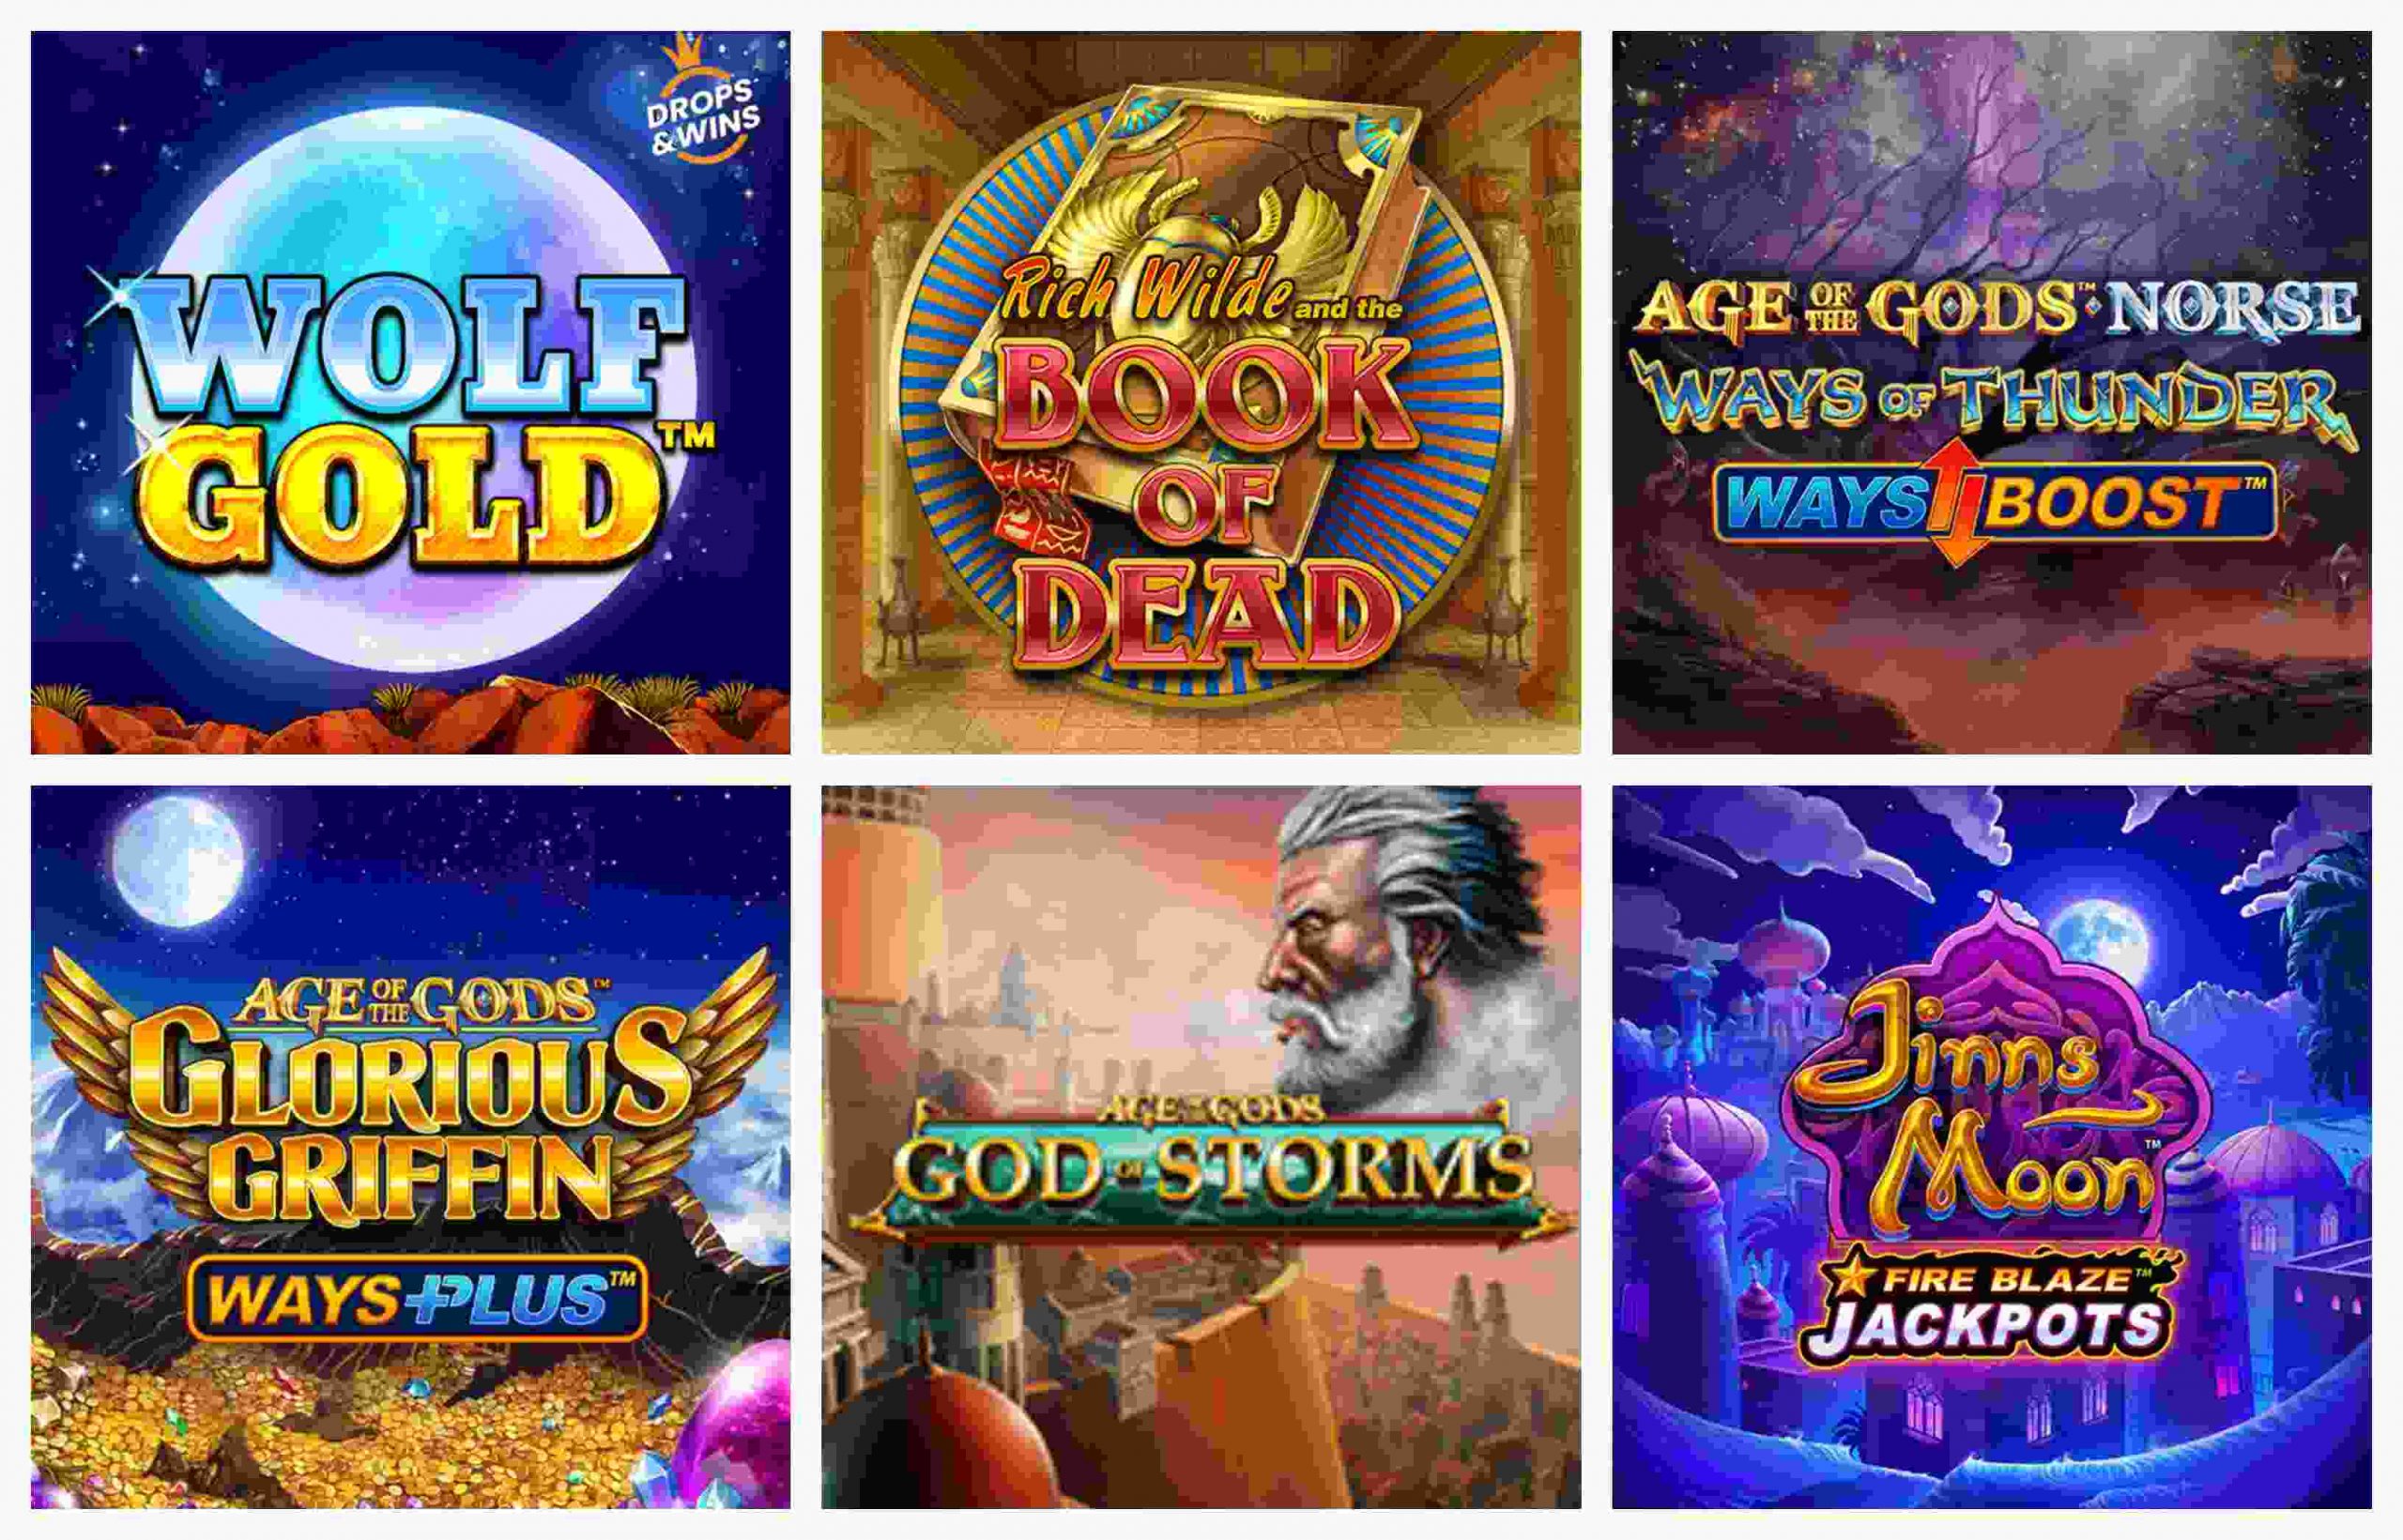 Online slot games at Casino.com